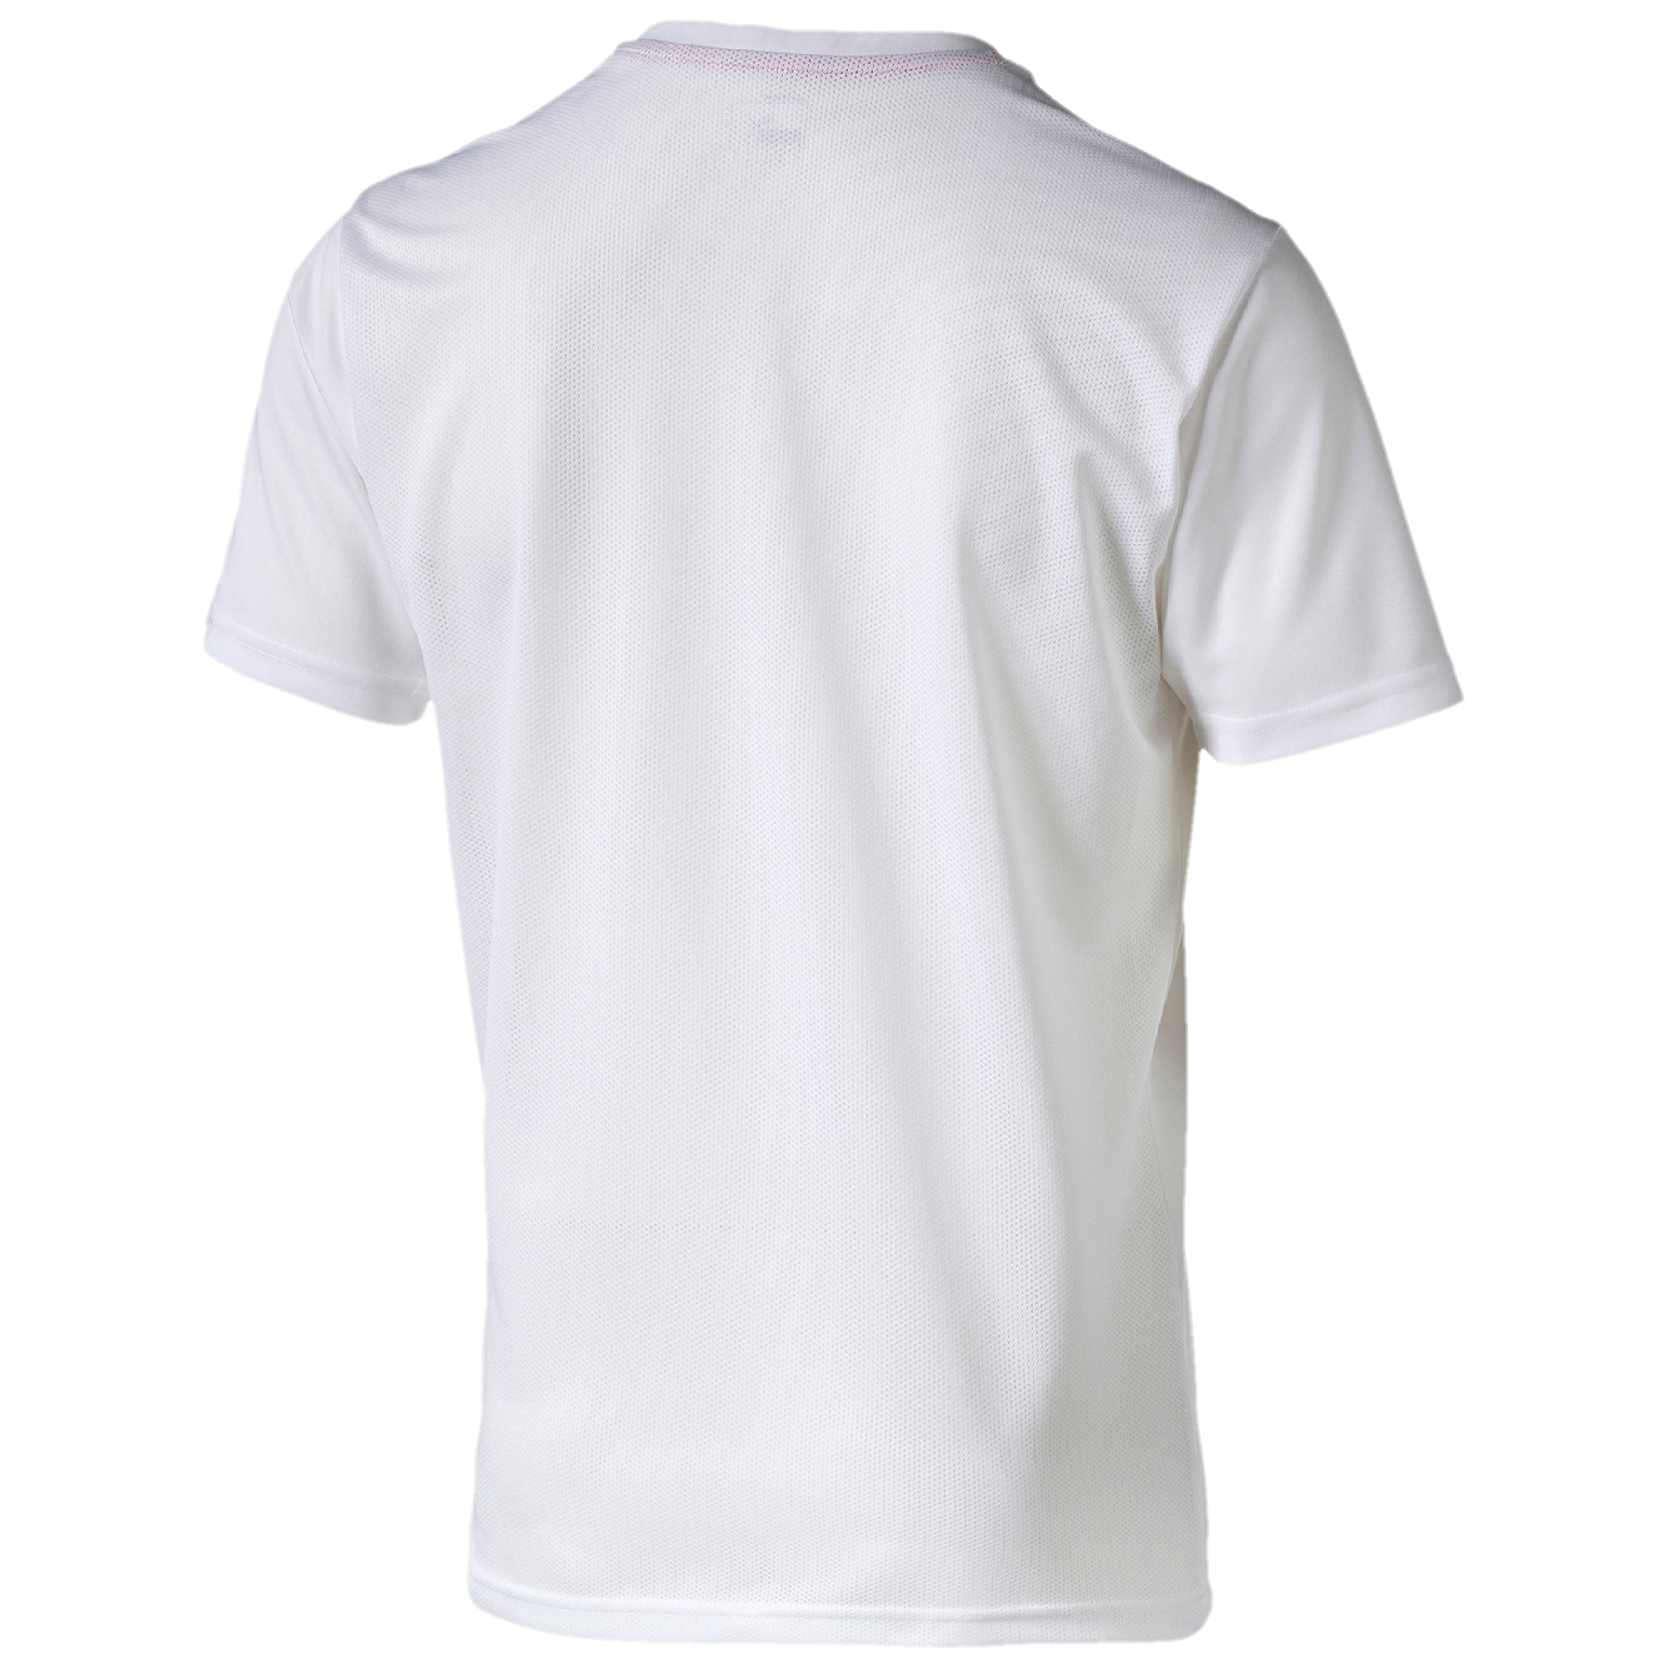 PUMA Kinder BTS Shirt Tee T-Shirt DryCELL Kids weiss 654414